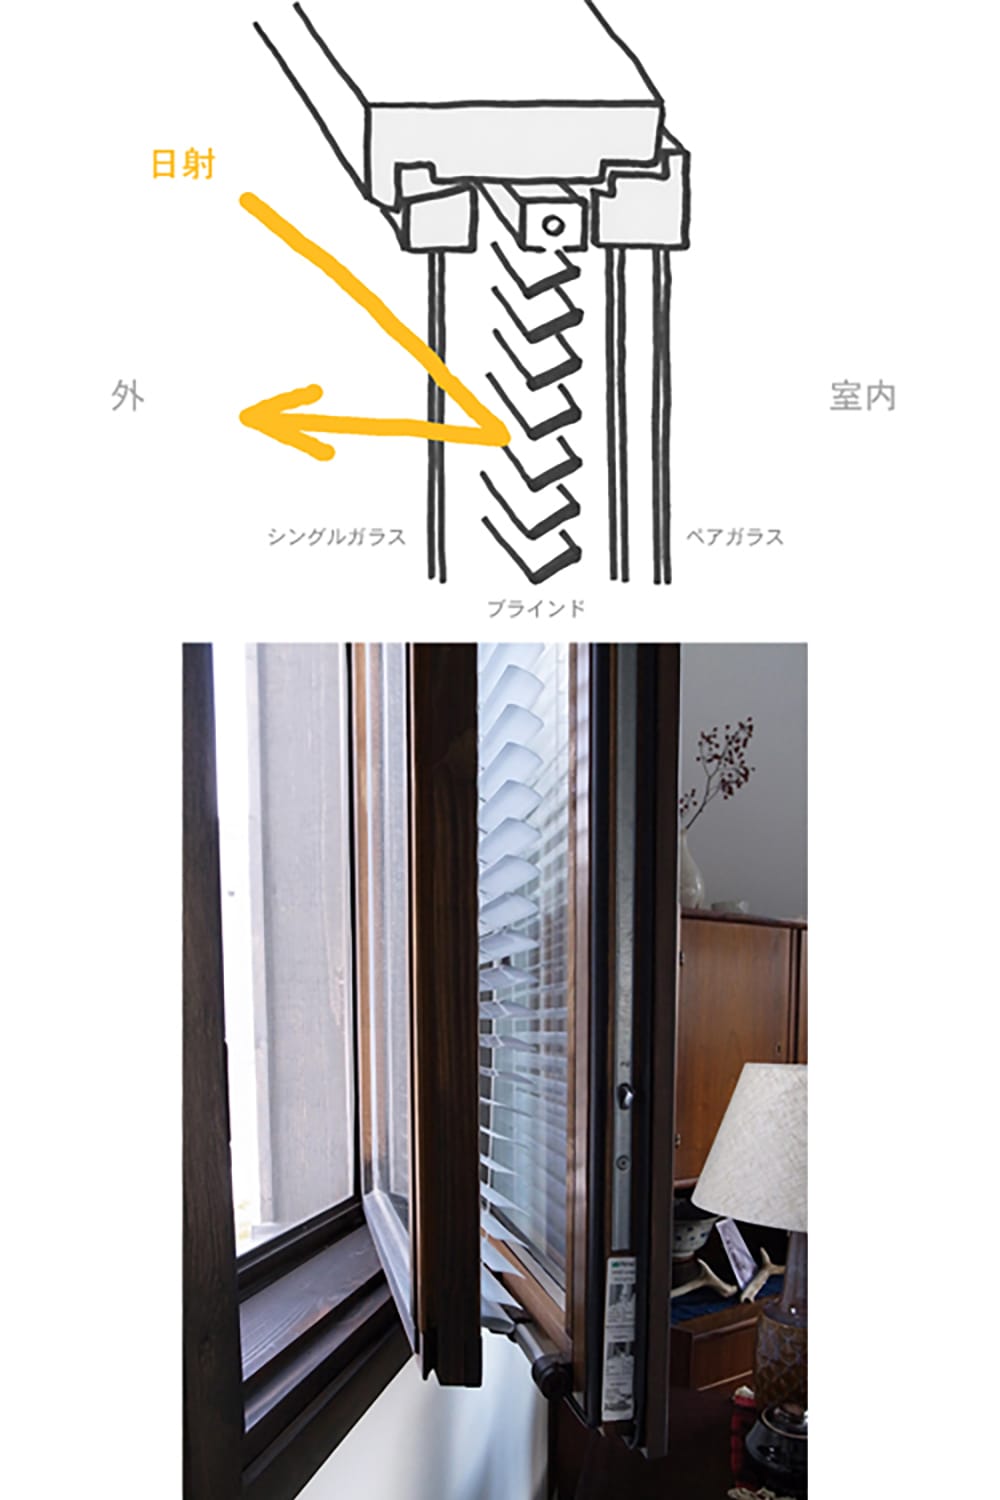 北欧フィンランド製の高性能なブラインド内蔵の木製窓の説明スケッチ